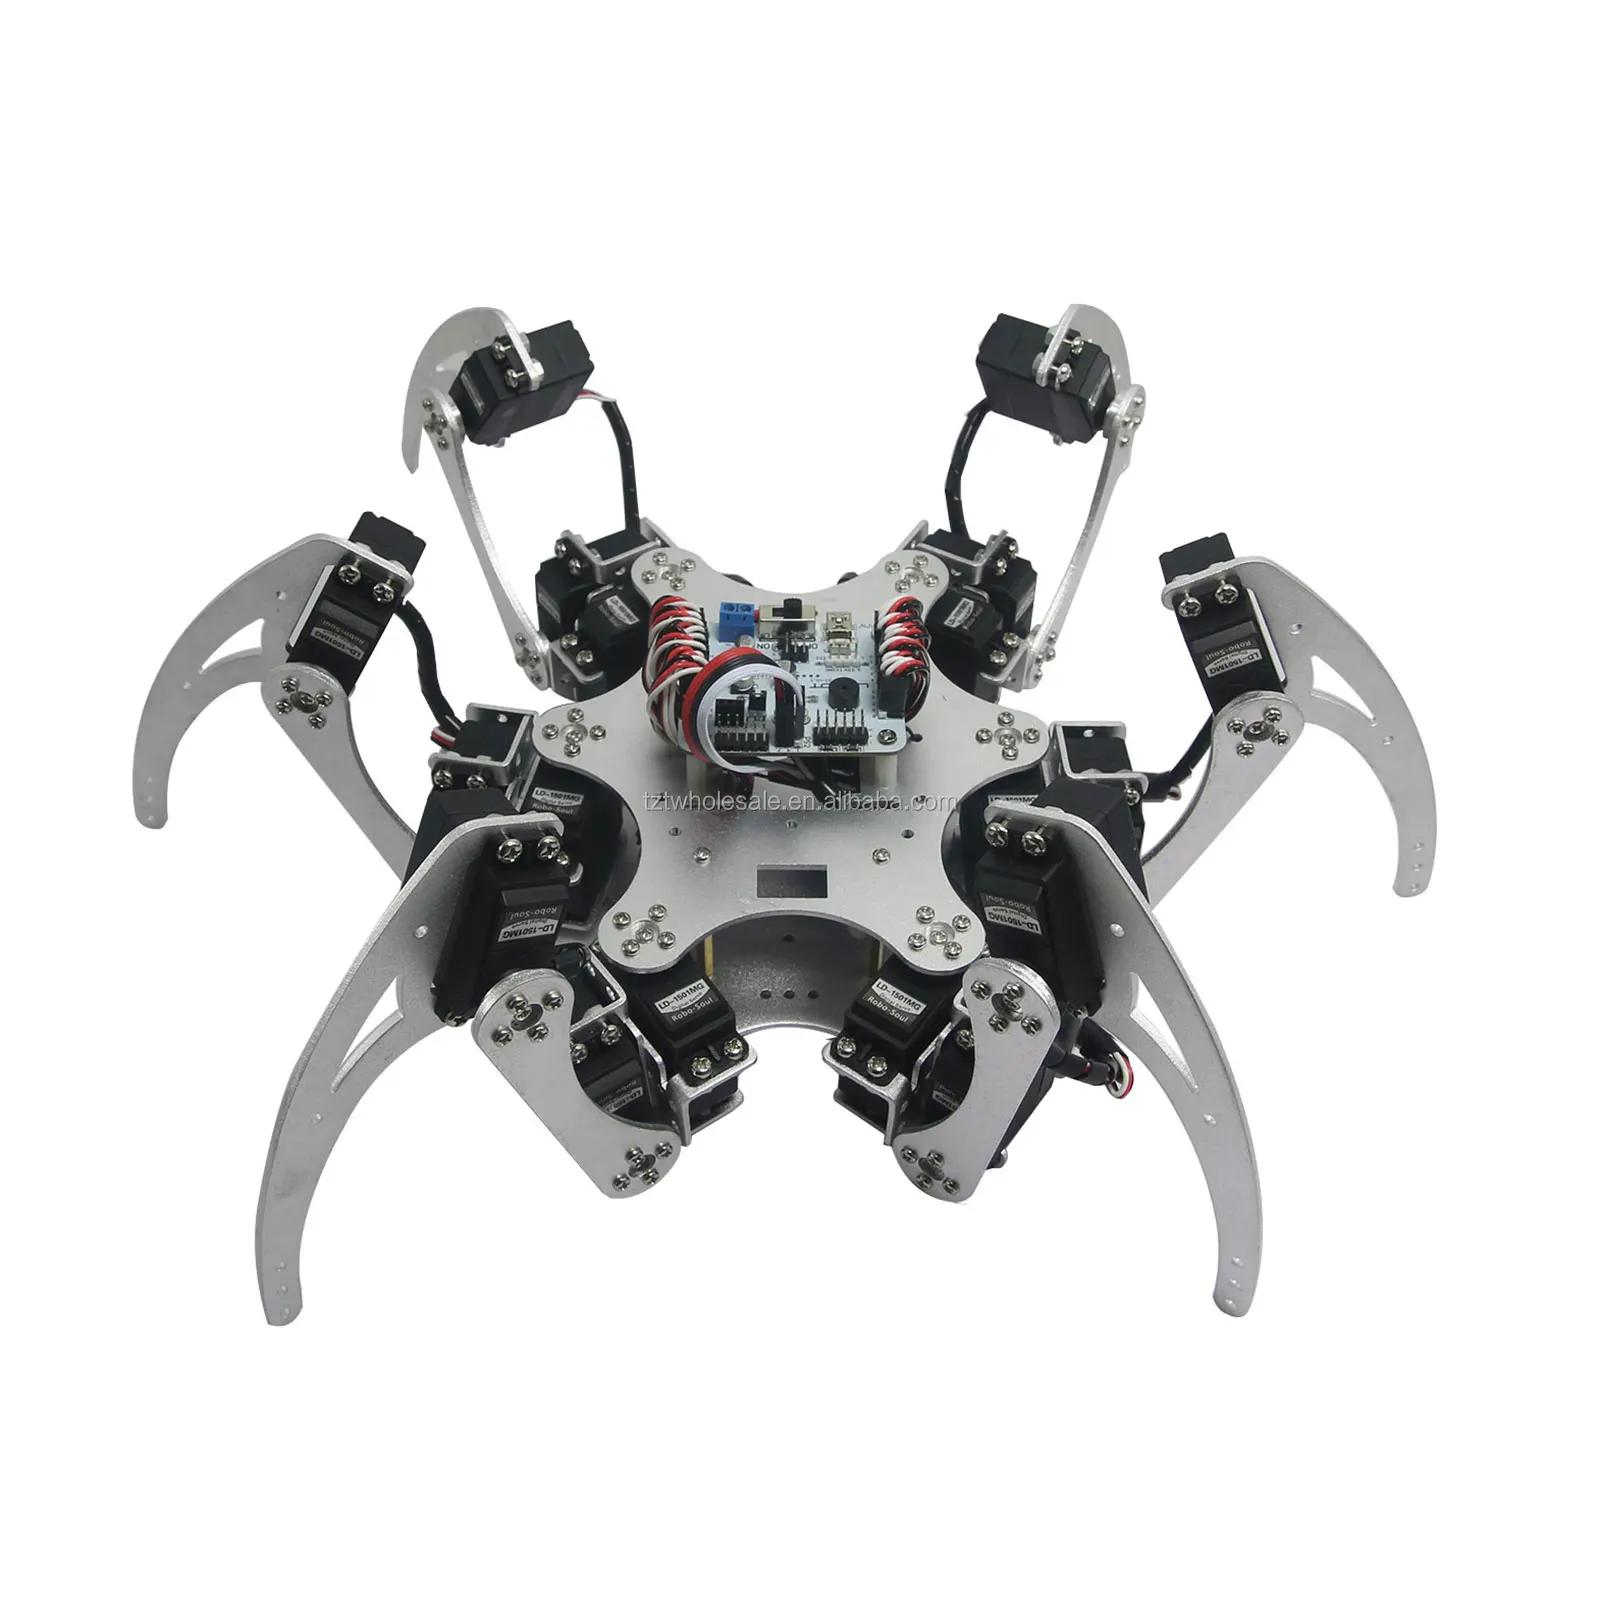 18DOF Aluminium Hexapod Spider Six 3DOF Legs Robot Frame Kit Fully New 